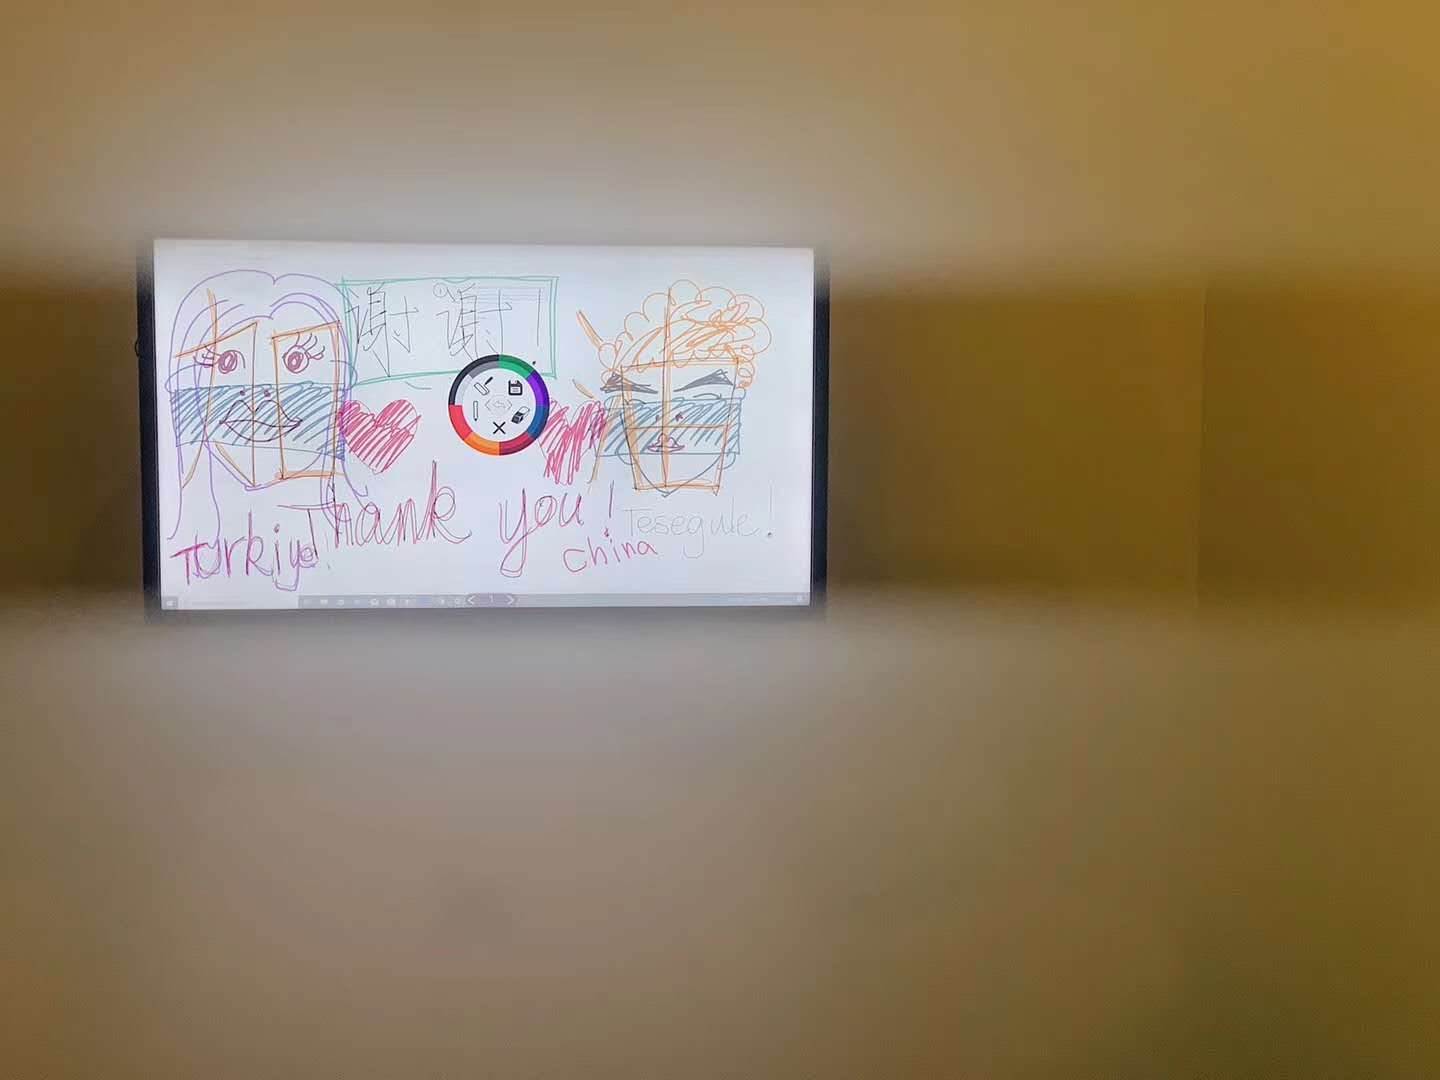 候机室房间里的涂鸦。